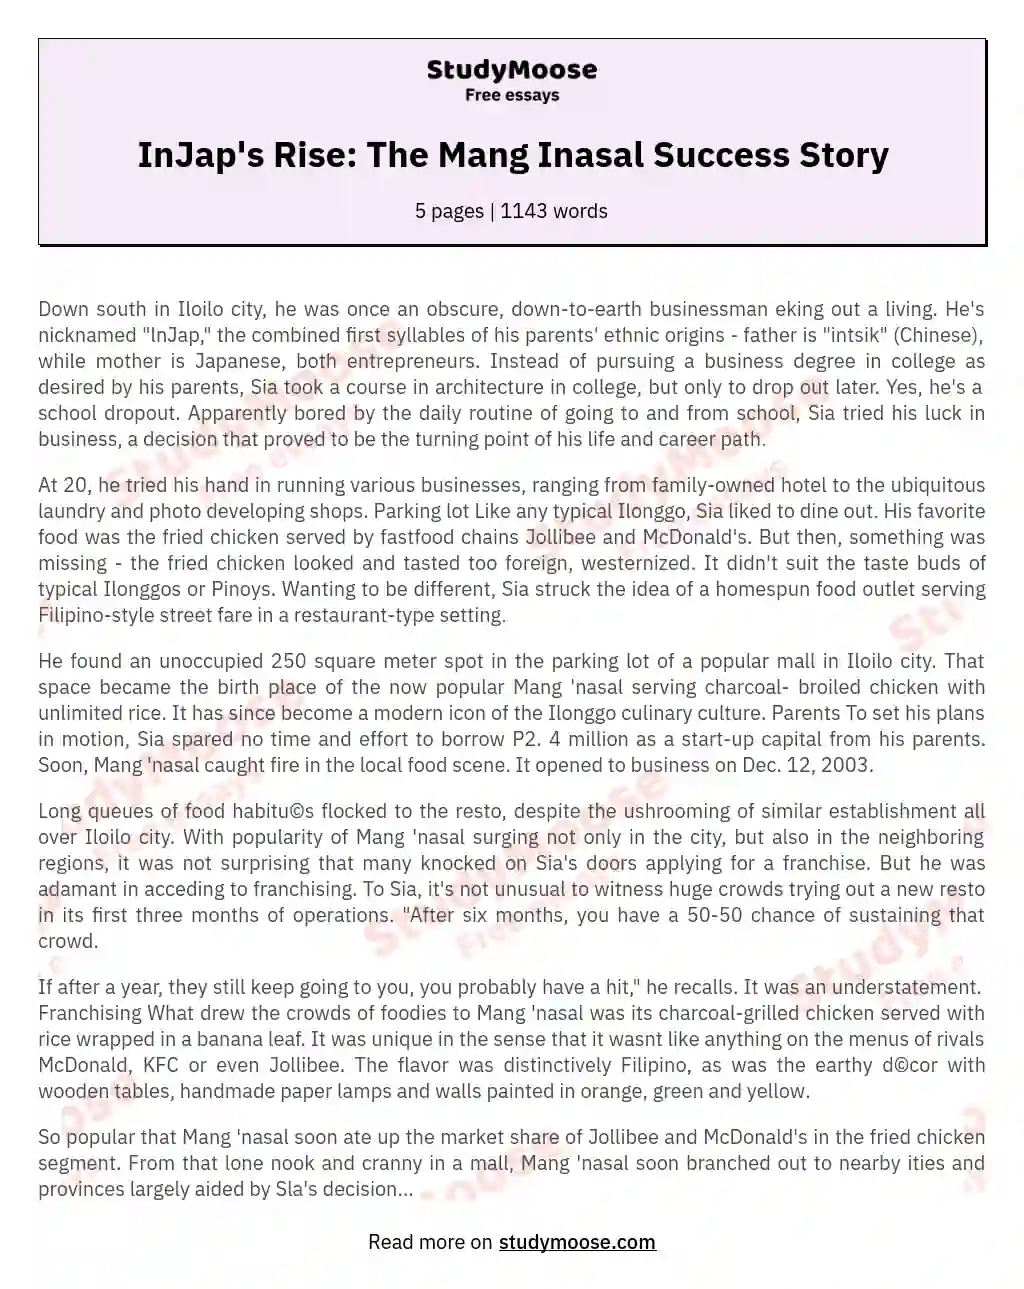 InJap's Rise: The Mang Inasal Success Story essay